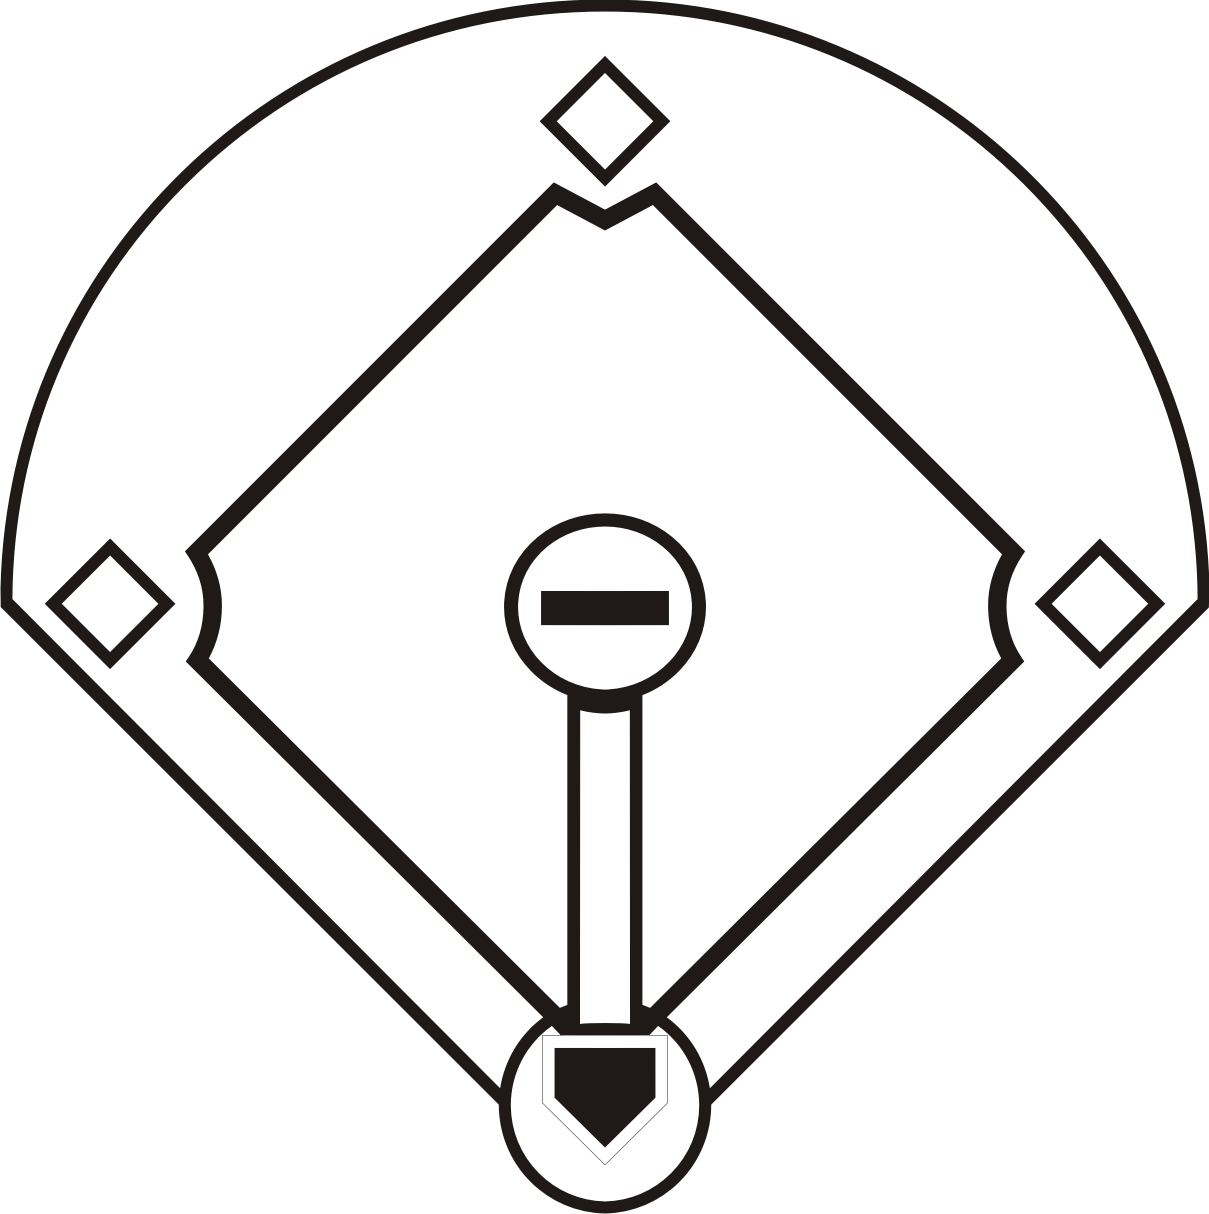 Baseball Diamond Template Printable